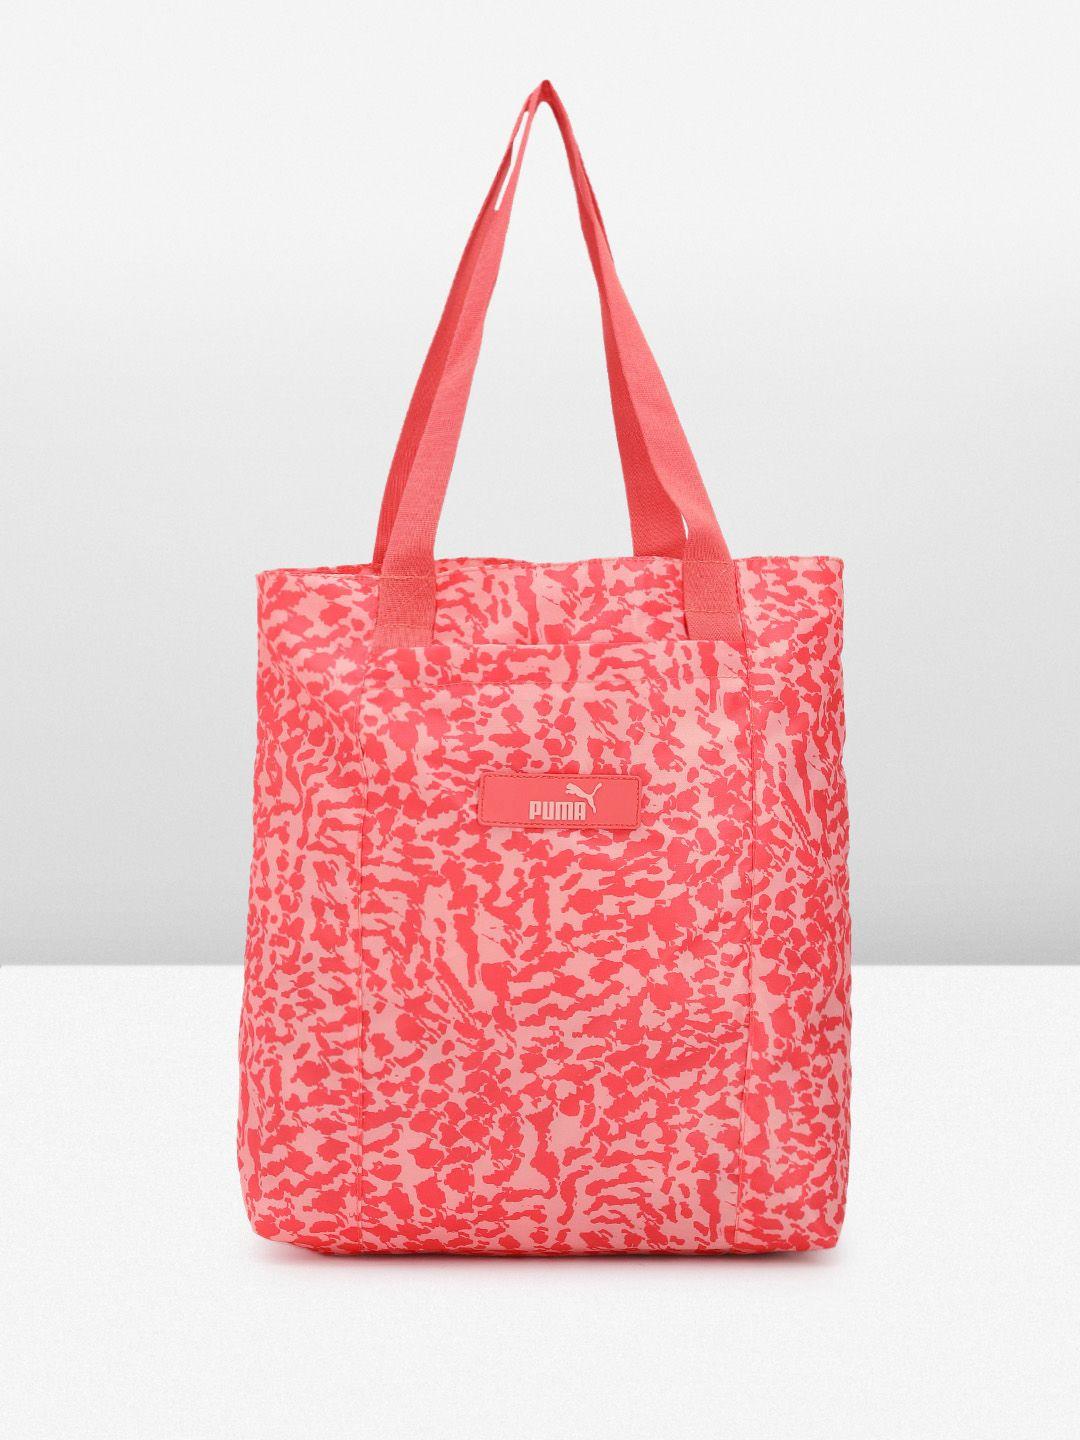 puma-core-pop-printed-shopper-tote-bag